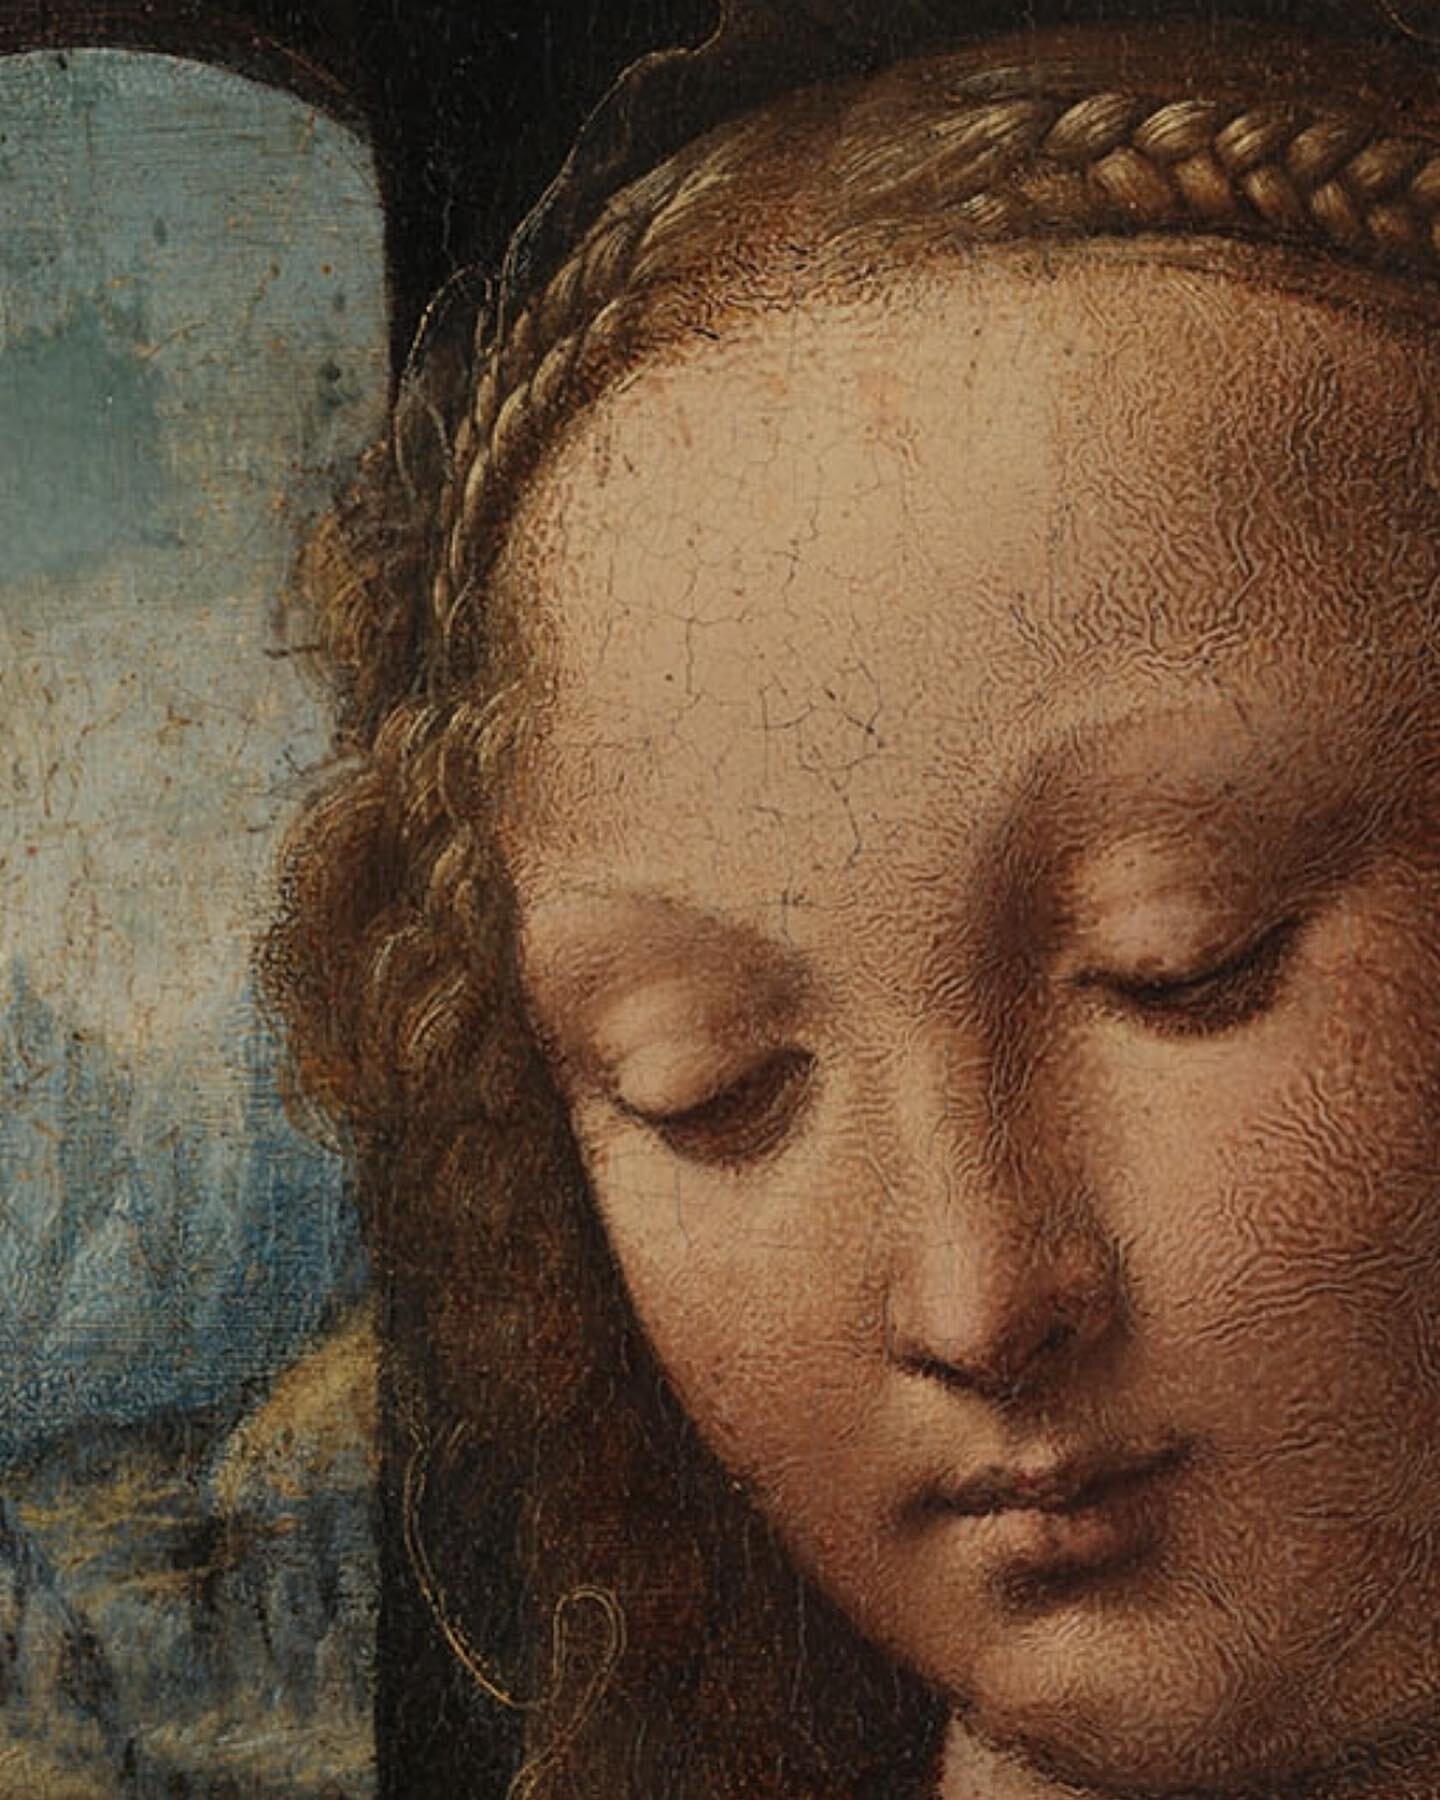 &iquest;Sab&iacute;as que la obra &ldquo;La Madonna del Clavel&rdquo; fue atribuida inicialmente a Andrea del Verrocchio, el maestro de Leonardo, pero estudios posteriores confirmaron que fue obra de Leonardo durante su aprendizaje con Verrocchio. 🙌